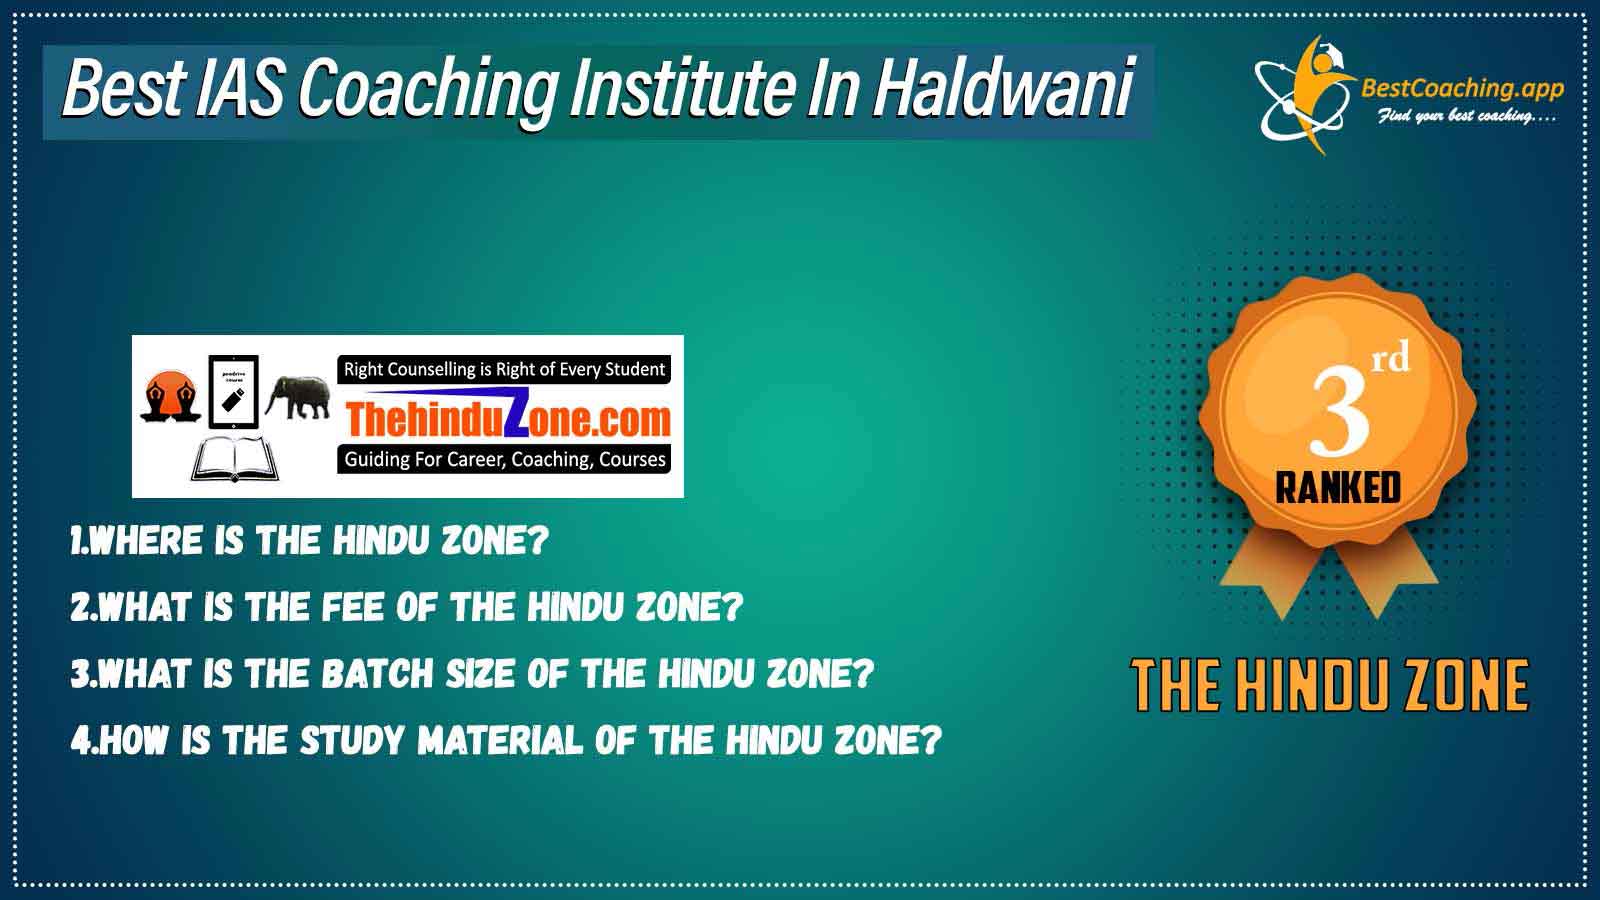 Rank 3 Best IAS Coaching in Haldwani